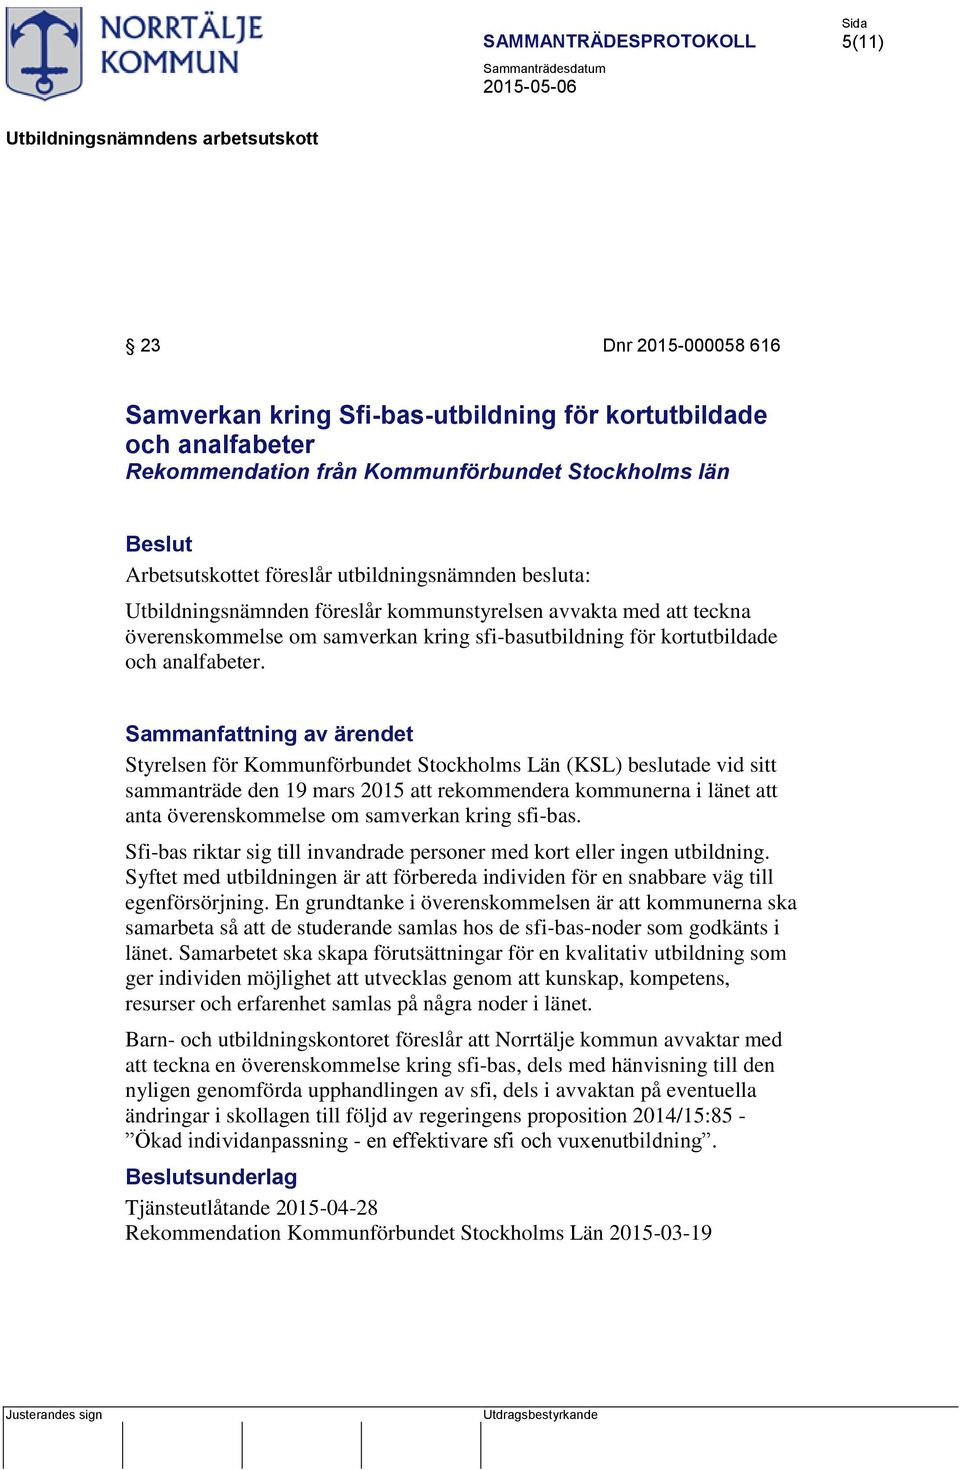 Styrelsen för Kommunförbundet Stockholms Län (KSL) beslutade vid sitt sammanträde den 19 mars 2015 att rekommendera kommunerna i länet att anta överenskommelse om samverkan kring sfi-bas.